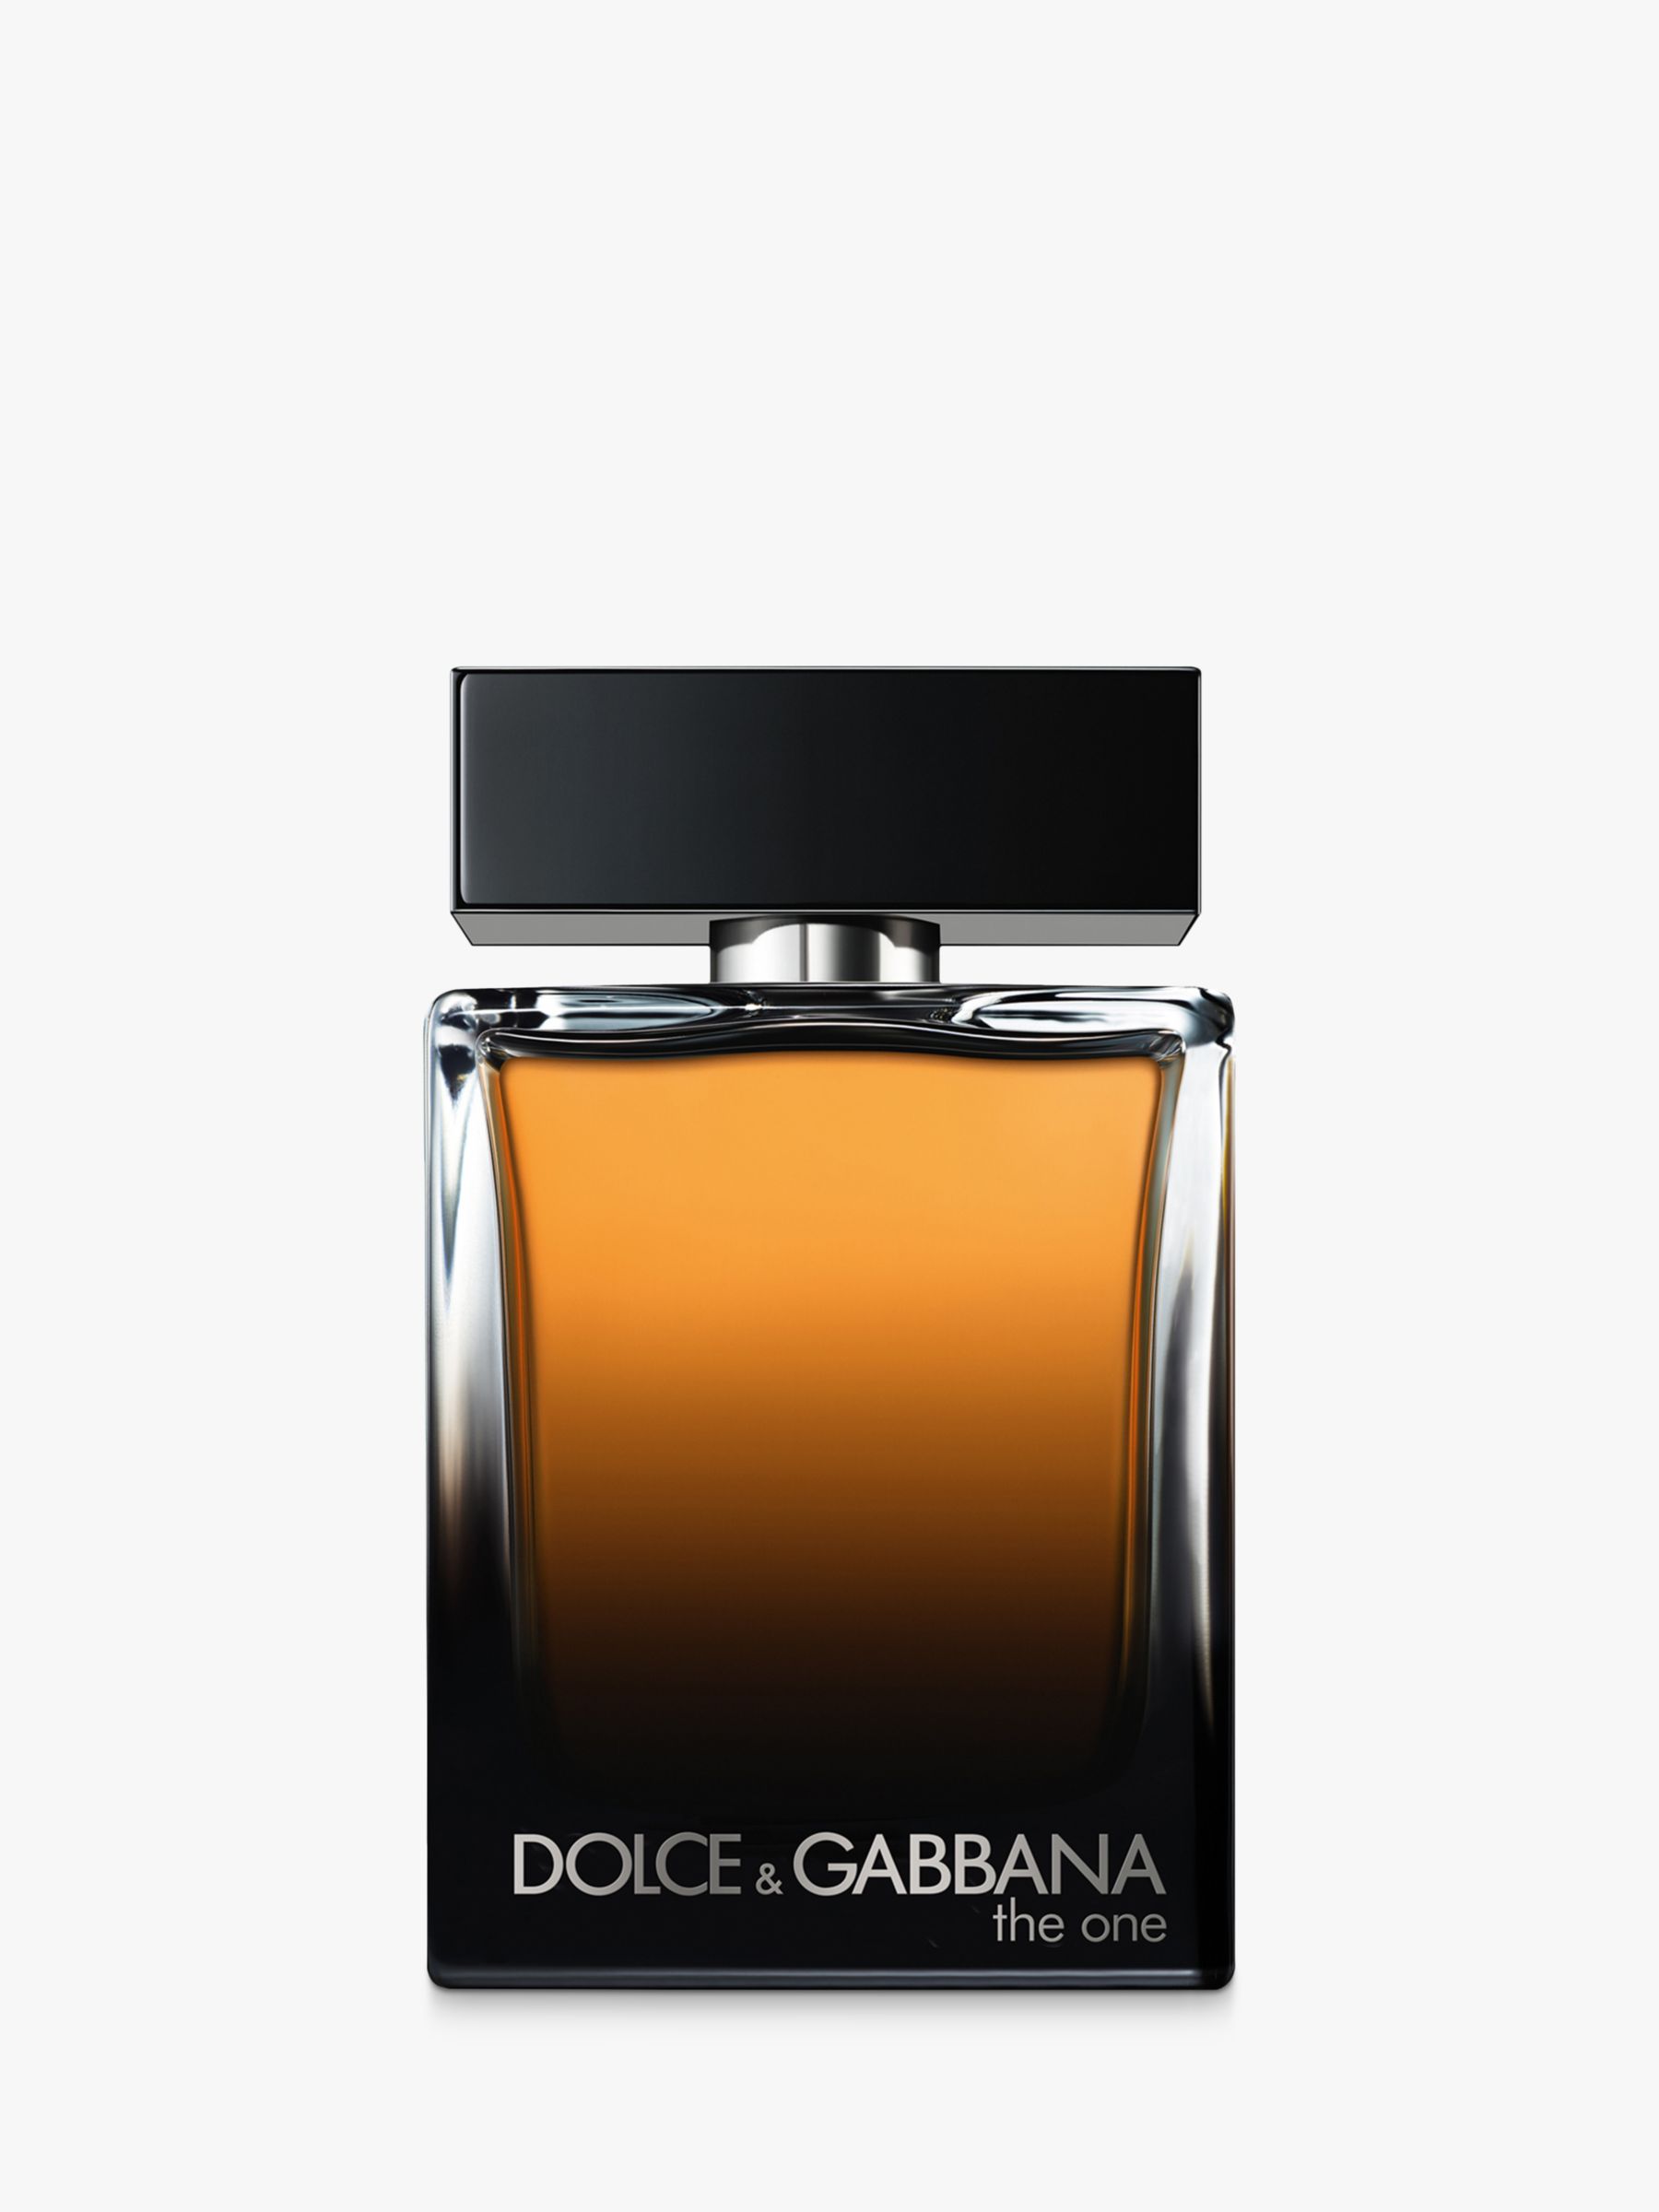 Dolce & Gabbana The One For Men Eau de Parfum at John Lewis & Partners